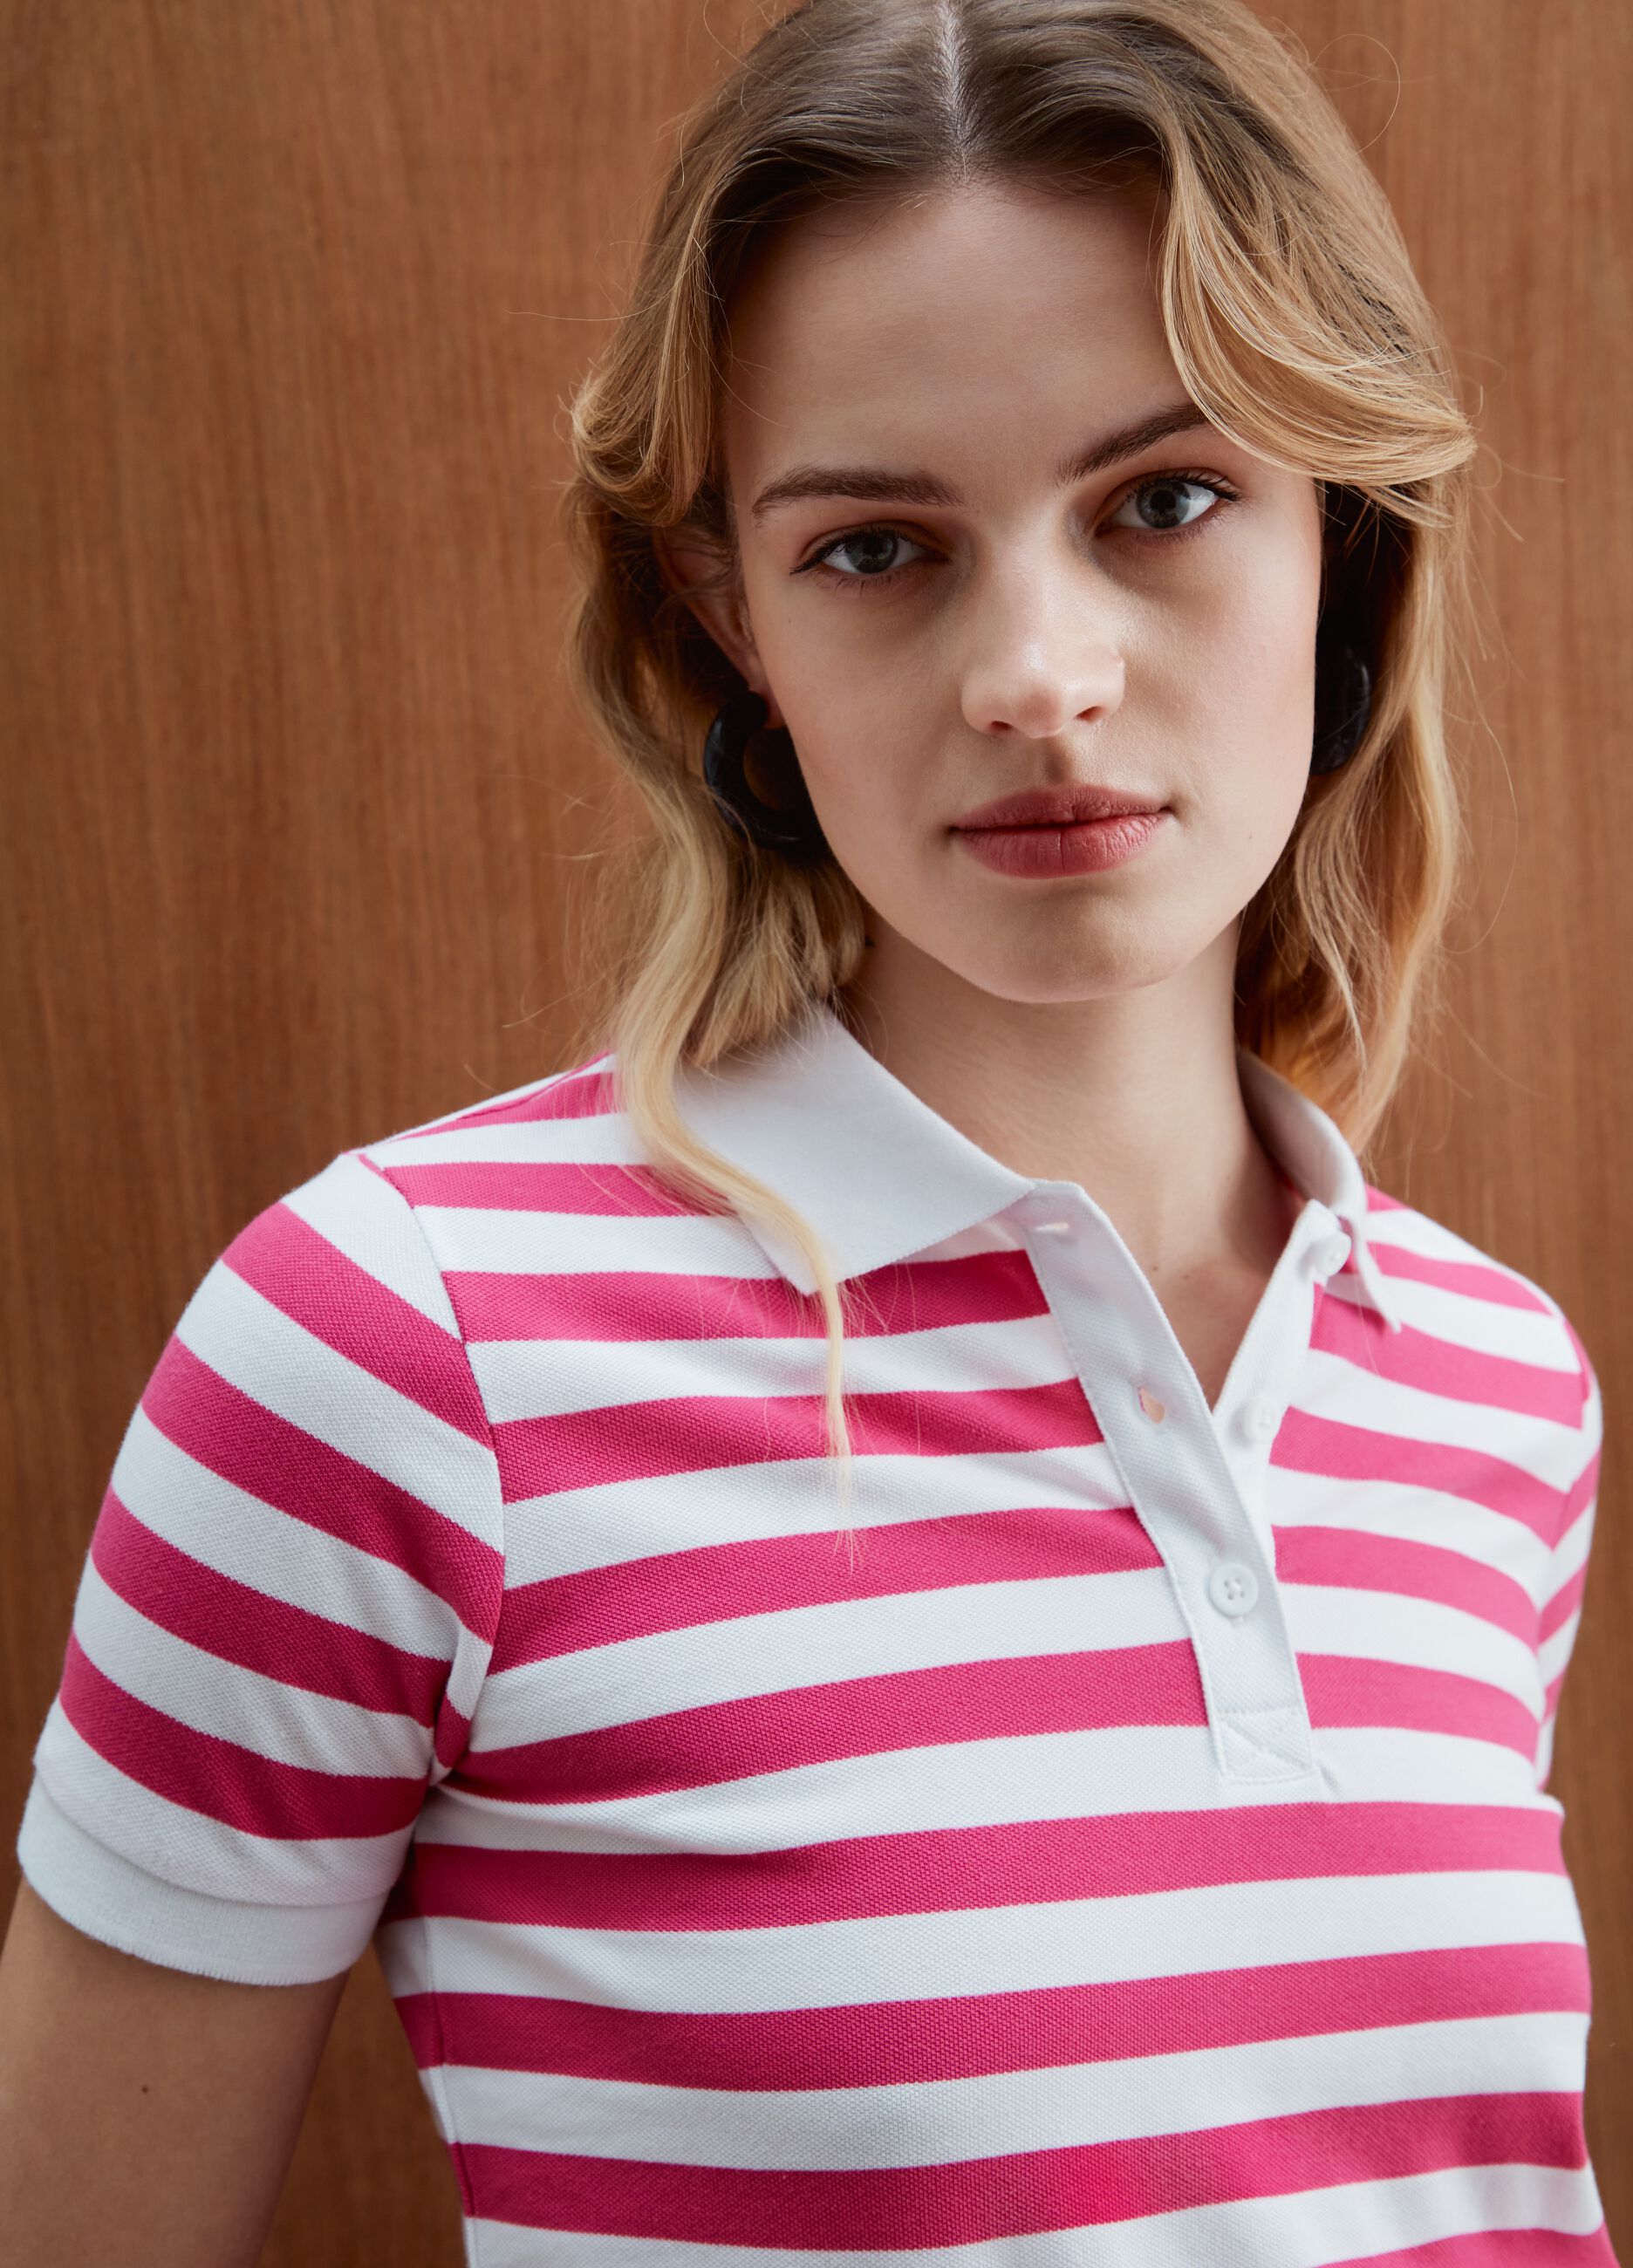 Striped pique polo shirt